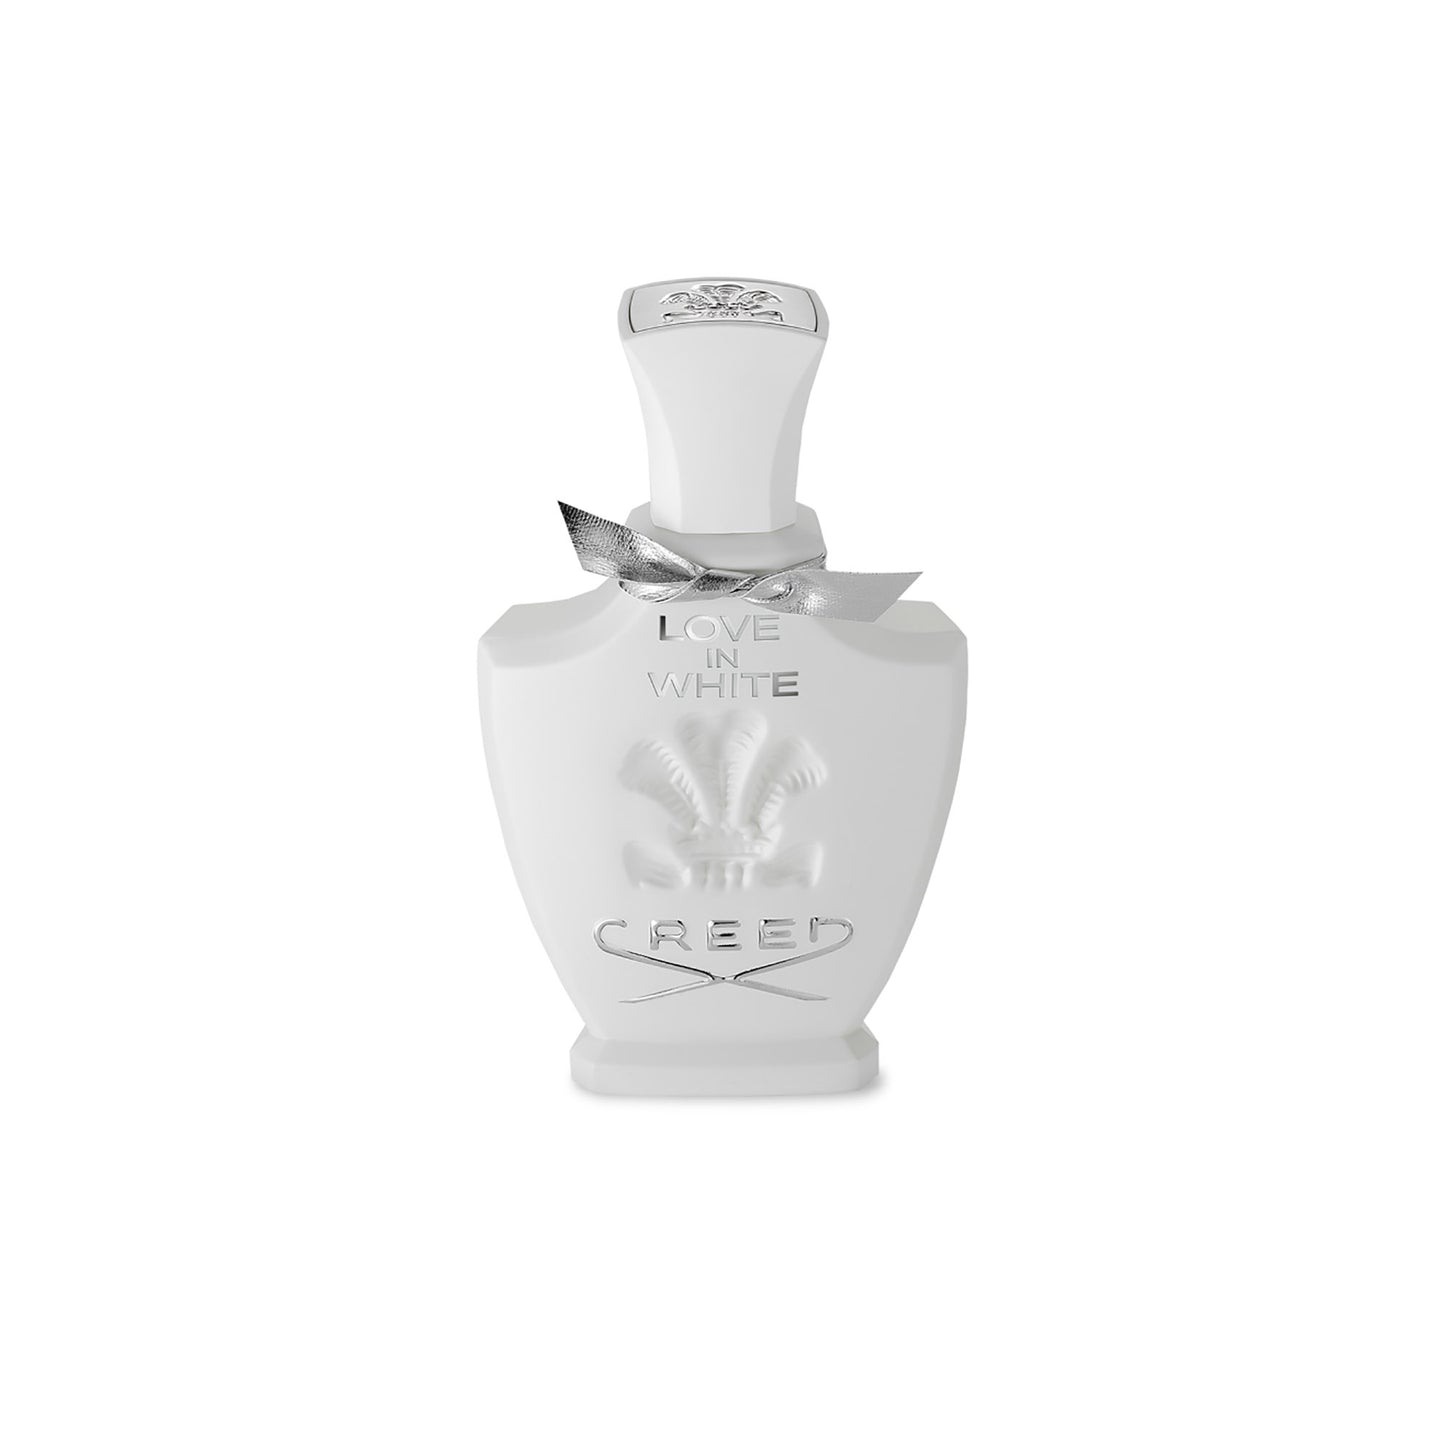 Creed Love in White 2.5 oz Perfume | So Avant Garde